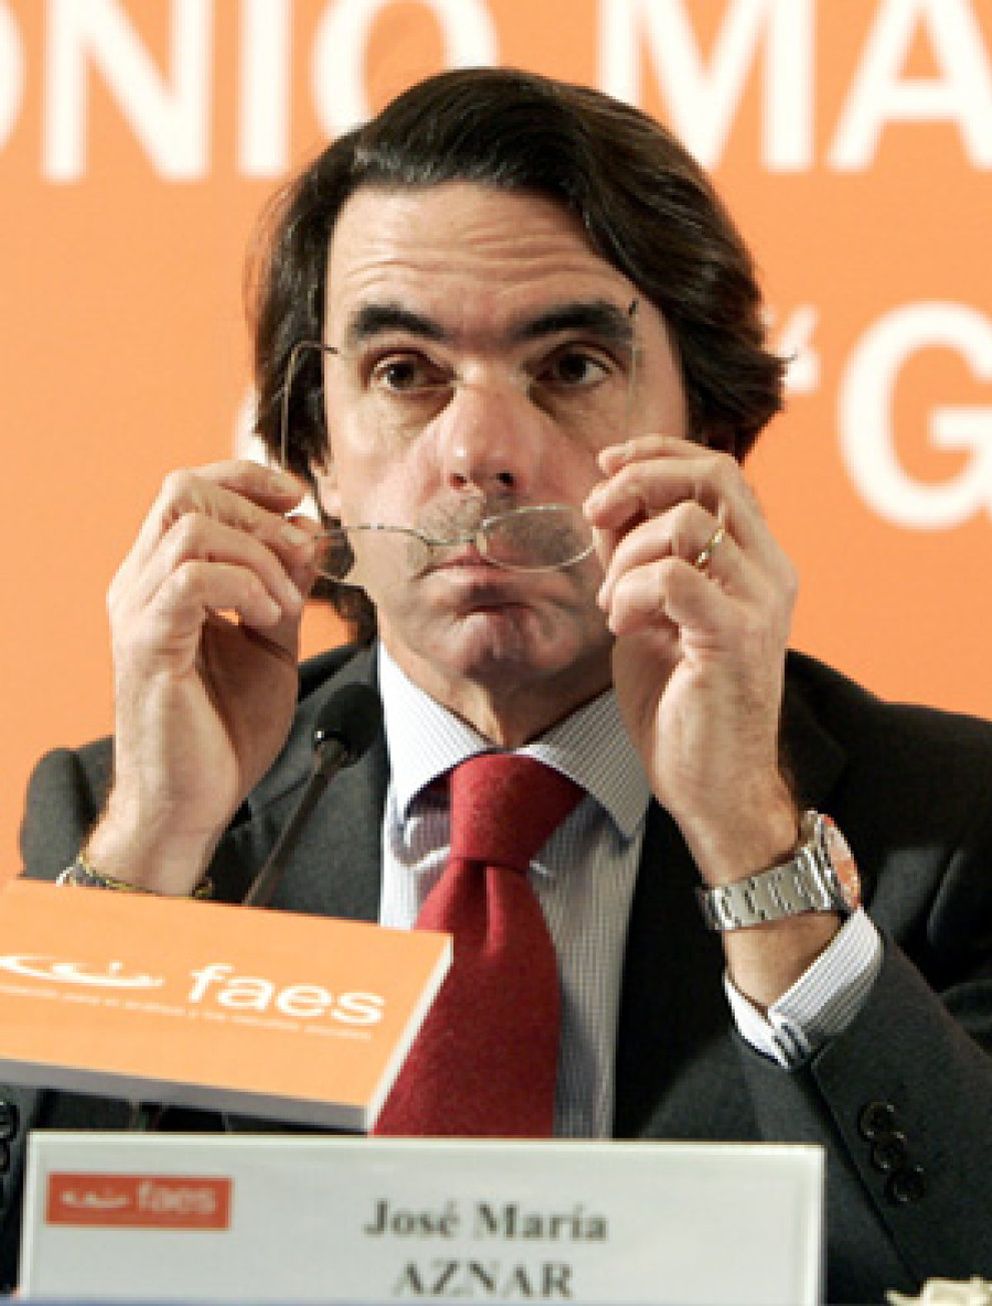 Foto: Génova quiere recuperar el control de FAES, aunque siga Aznar, para aprovechar sus recursos